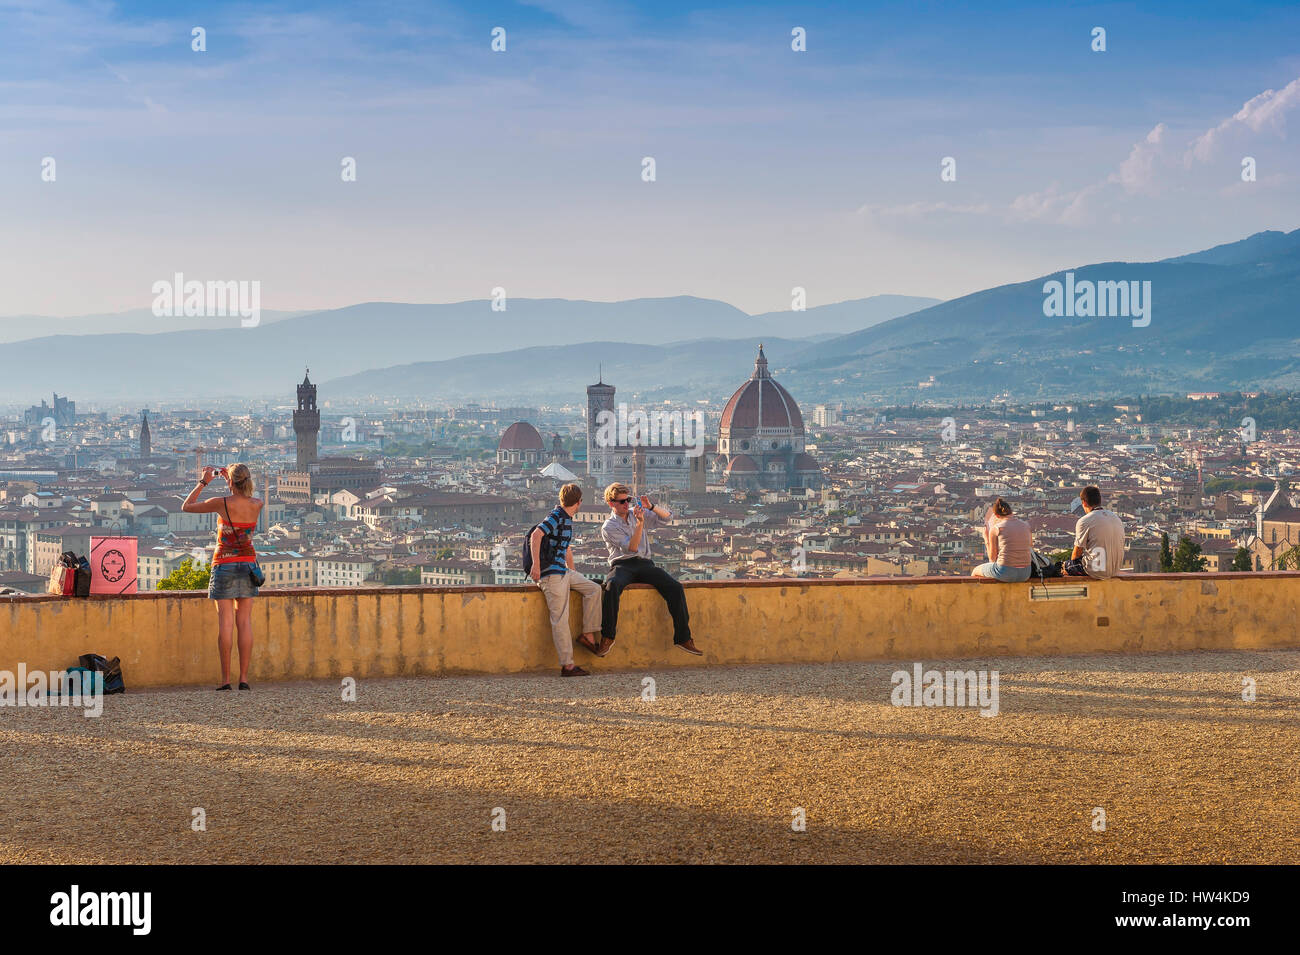 Firenze turismo, vista dei turisti raccolti su una terrazza collinare che domina la città panoramica di Firenze poco prima del tramonto, Firenze, Toscana, Italia. Foto Stock